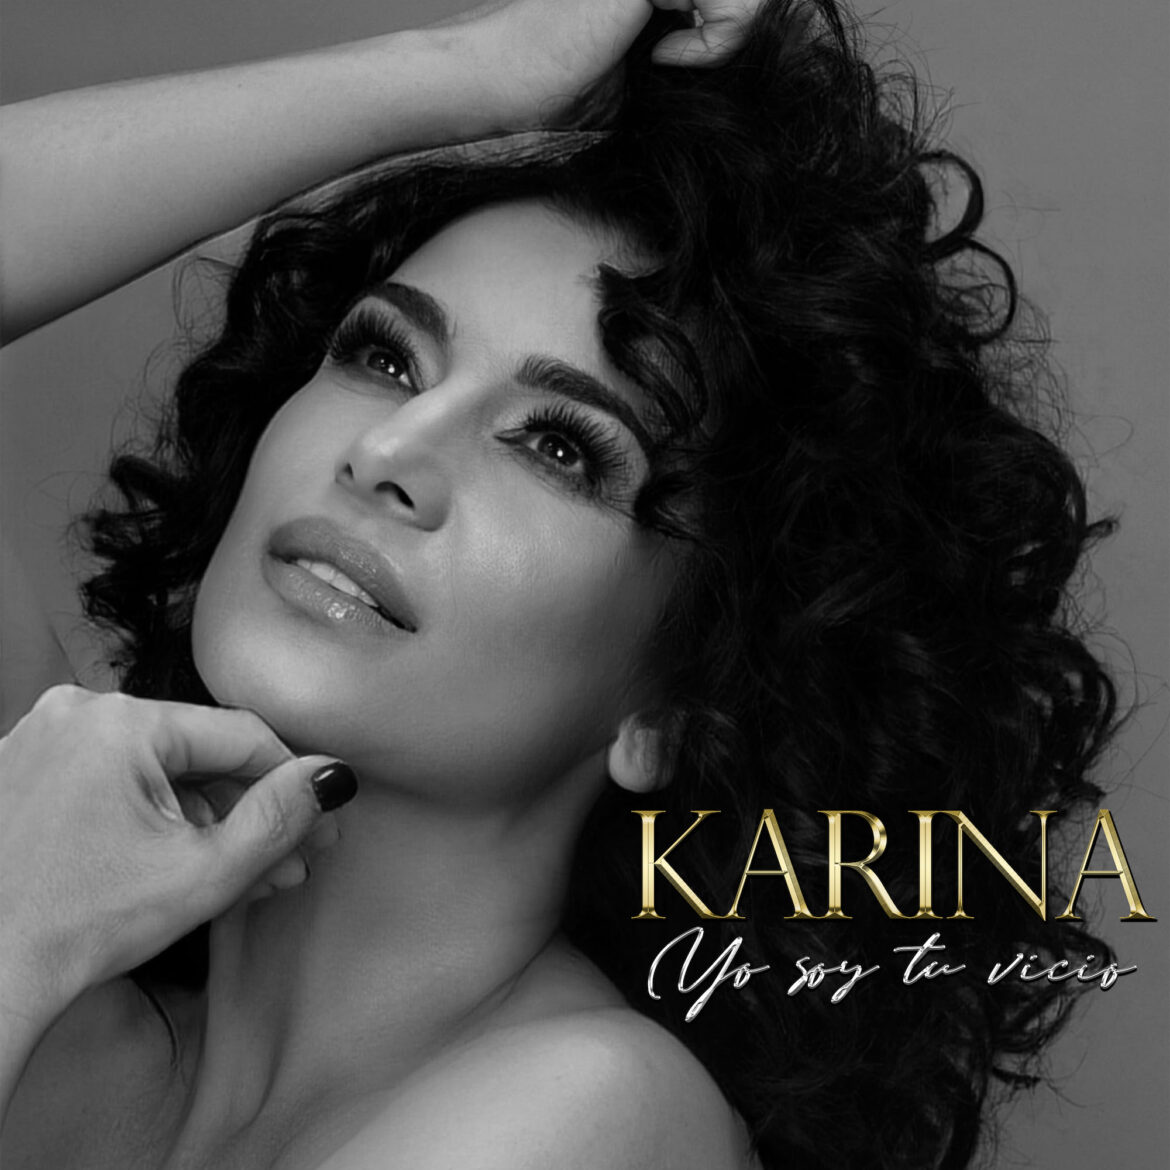 Karina sorprende con “Yo soy tu vicio” un nuevo sencillo con gran influencia mexicana